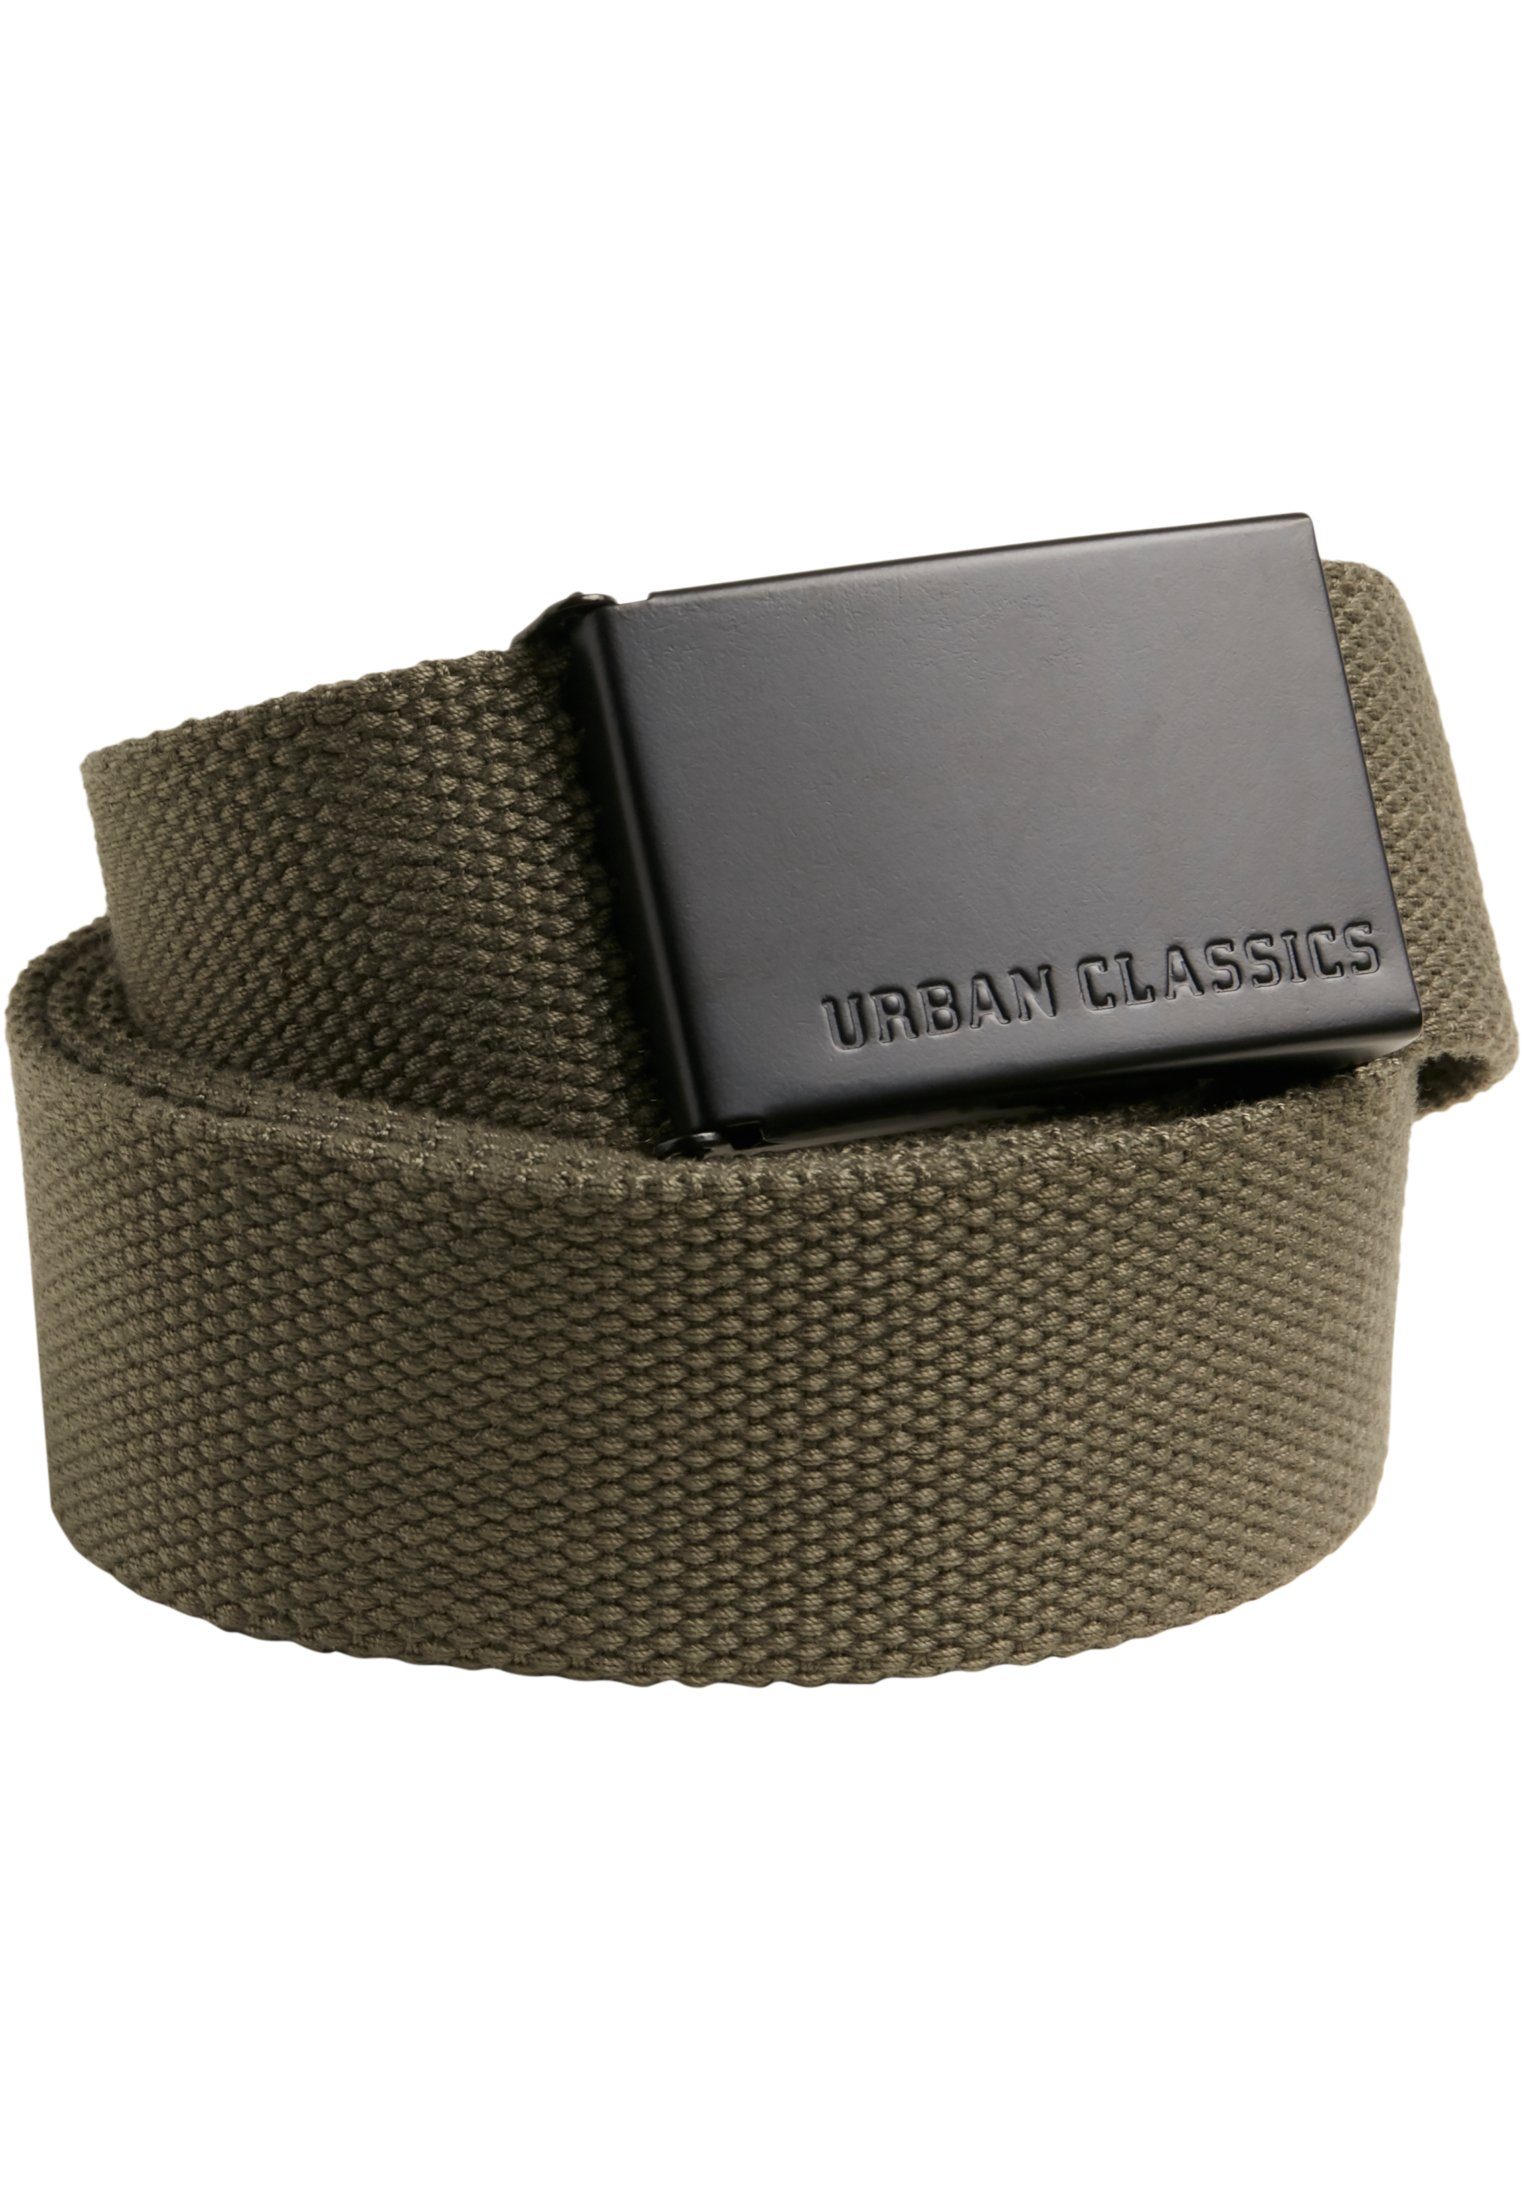 URBAN CLASSICS Hüftgürtel Accessoires Canvas Belts olive-black | Gürtel